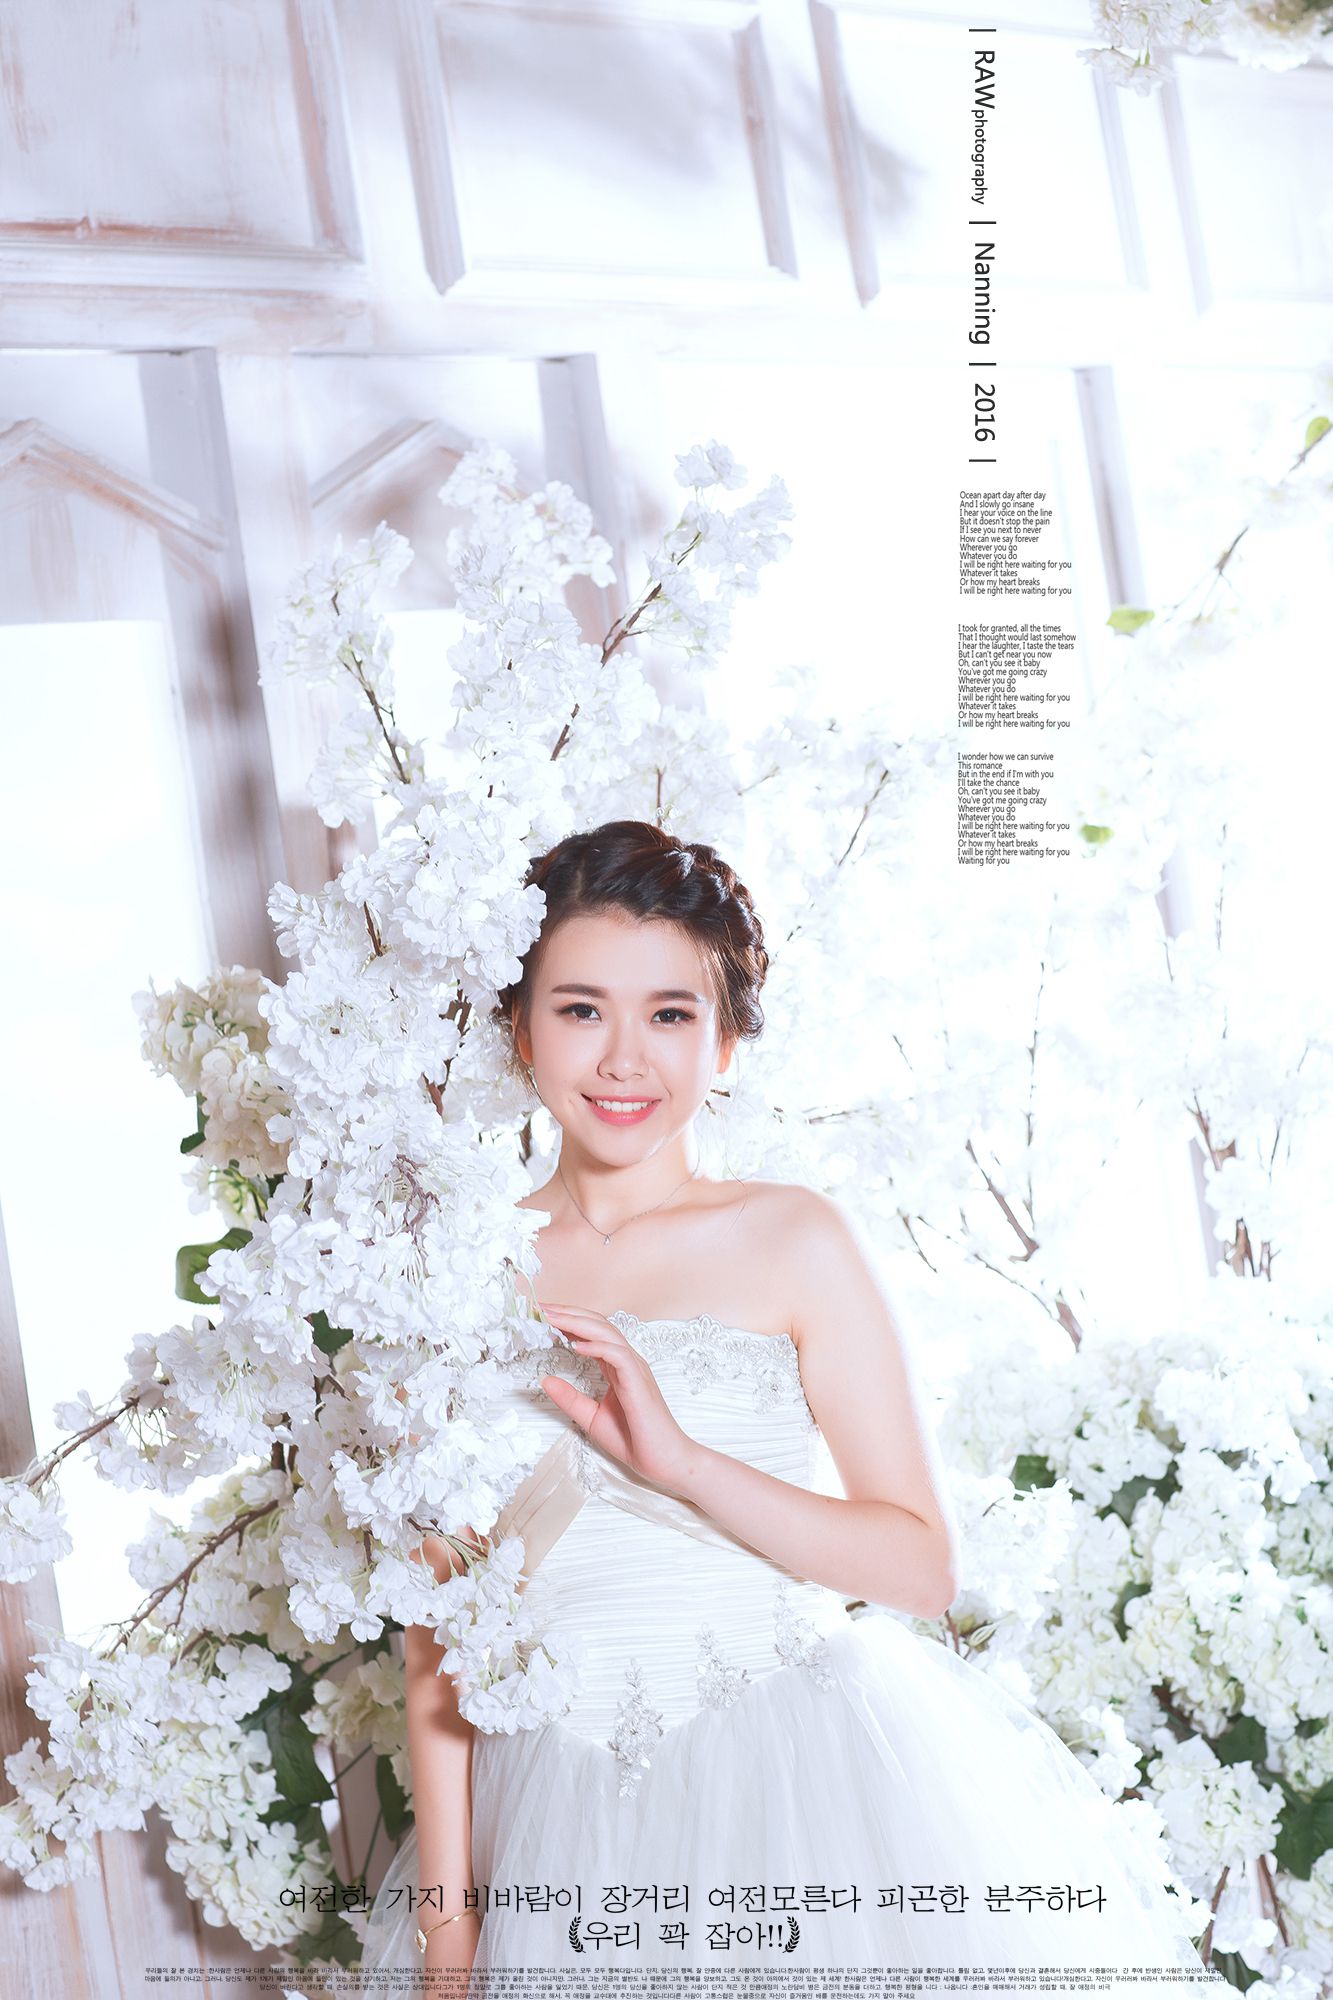 2017年7月广州结婚照,清远婚纱照,婚纱照图片